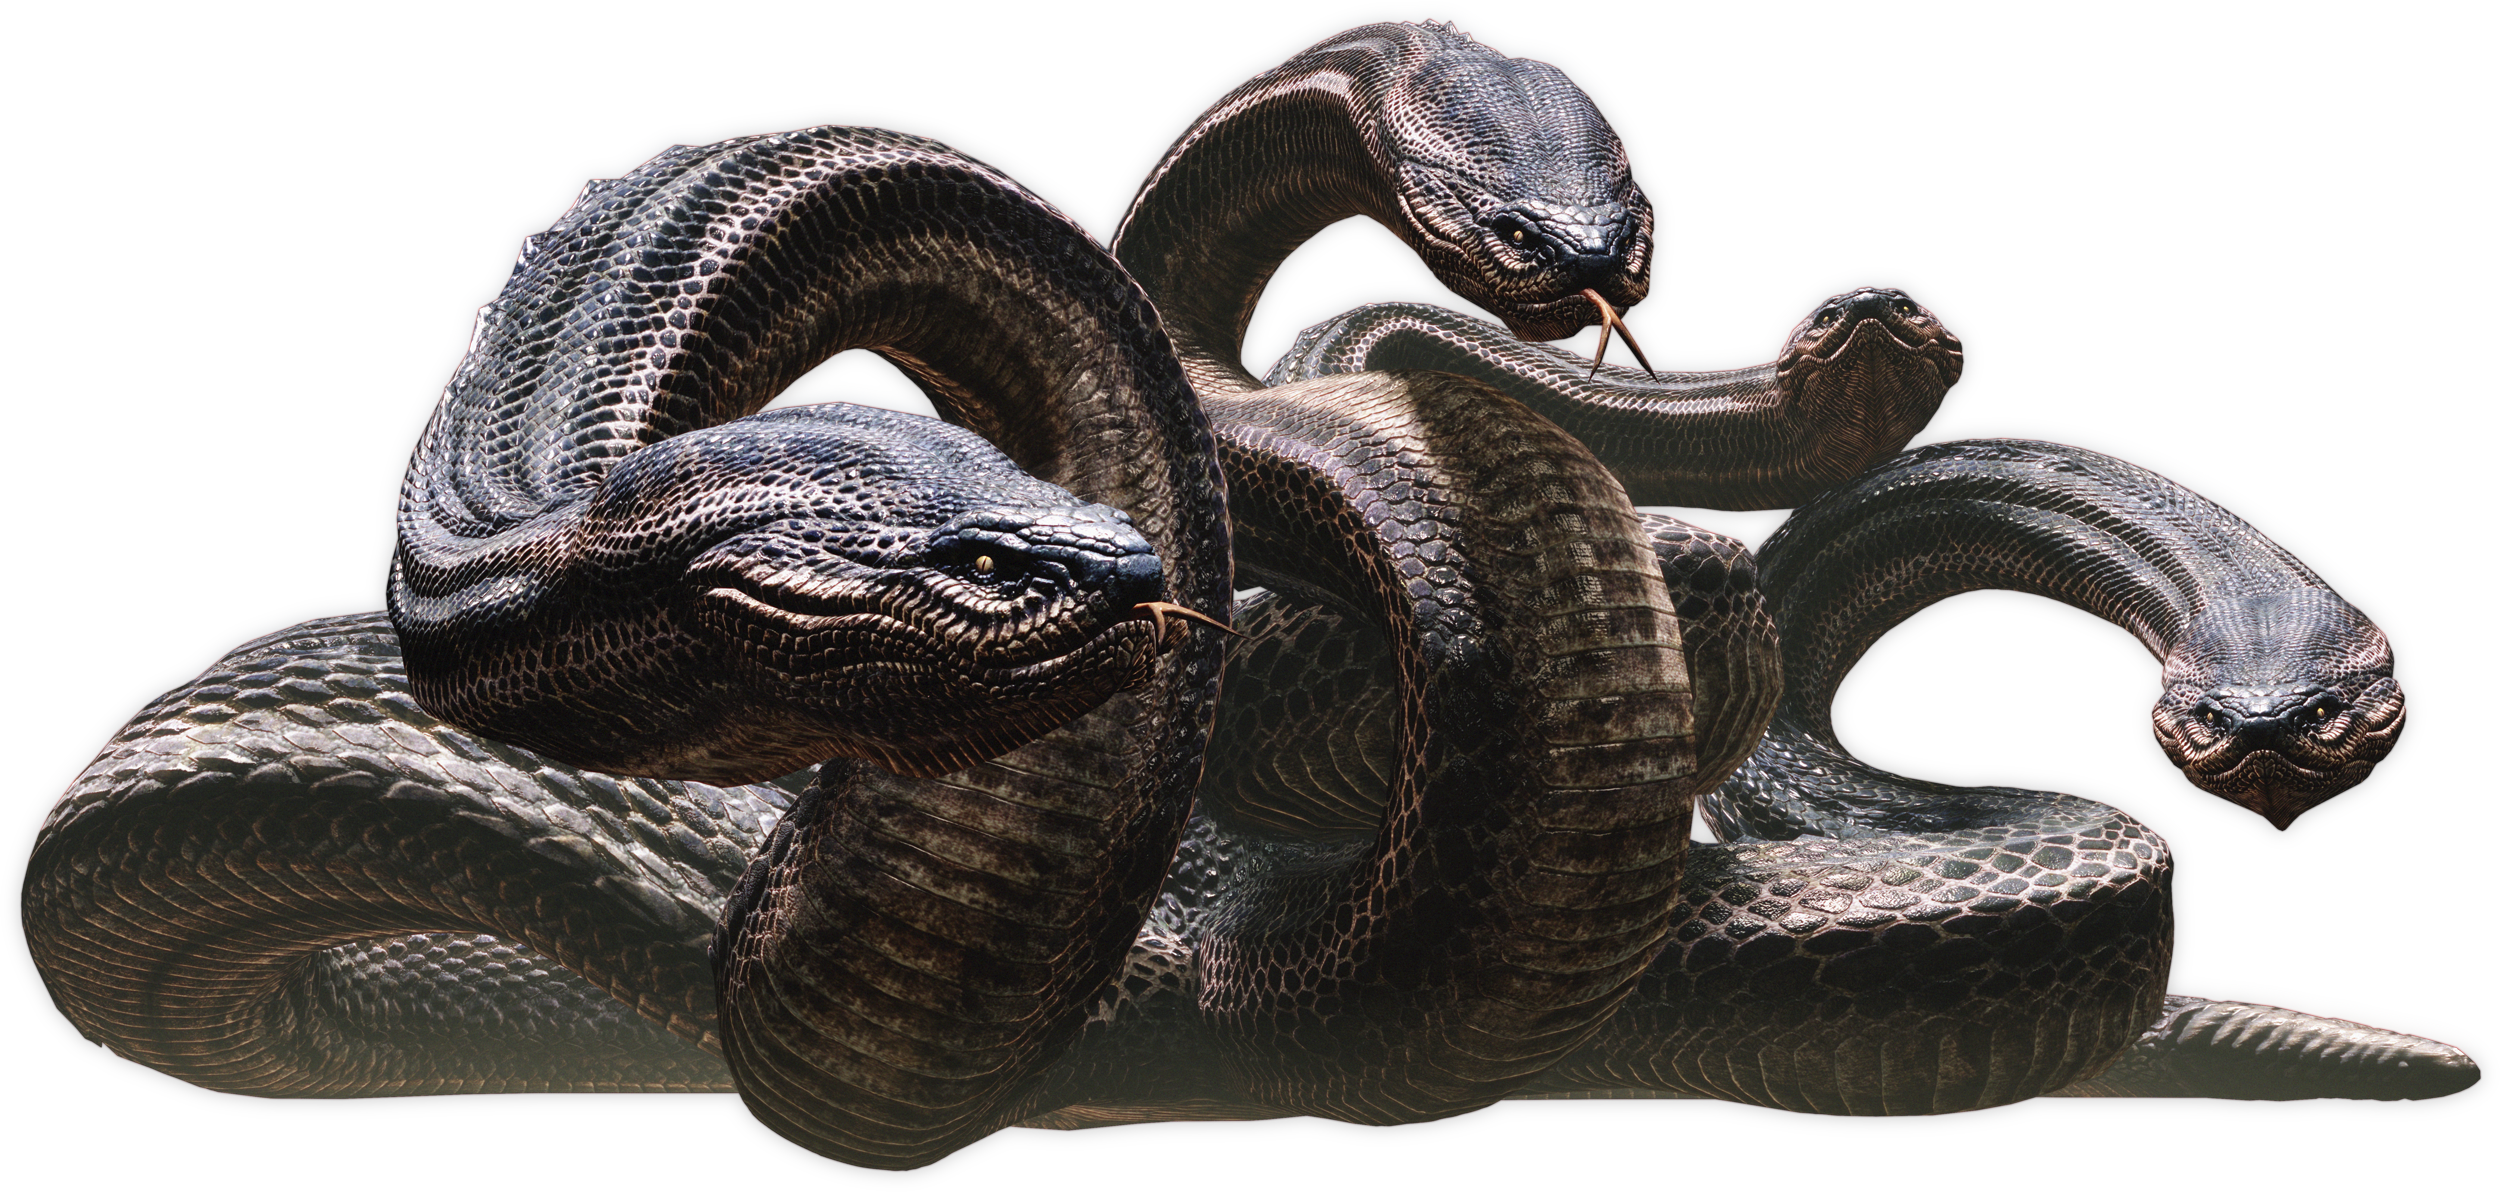 Hydra, Dragon's Dogma Wiki